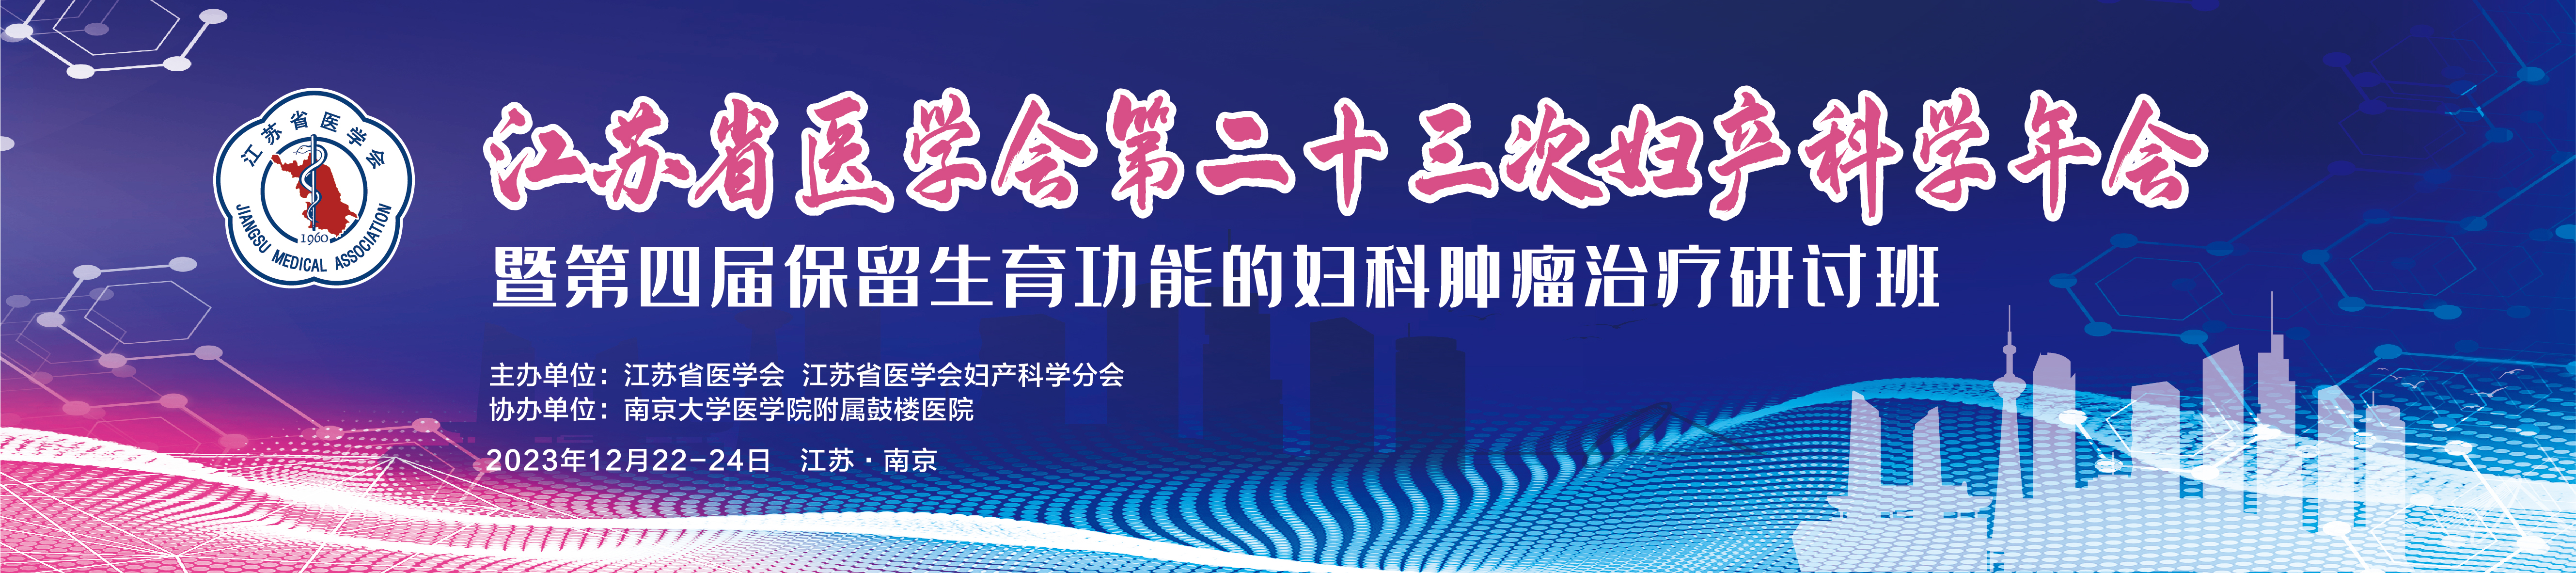 江苏省医学会第二十三次妇产科学学术会议